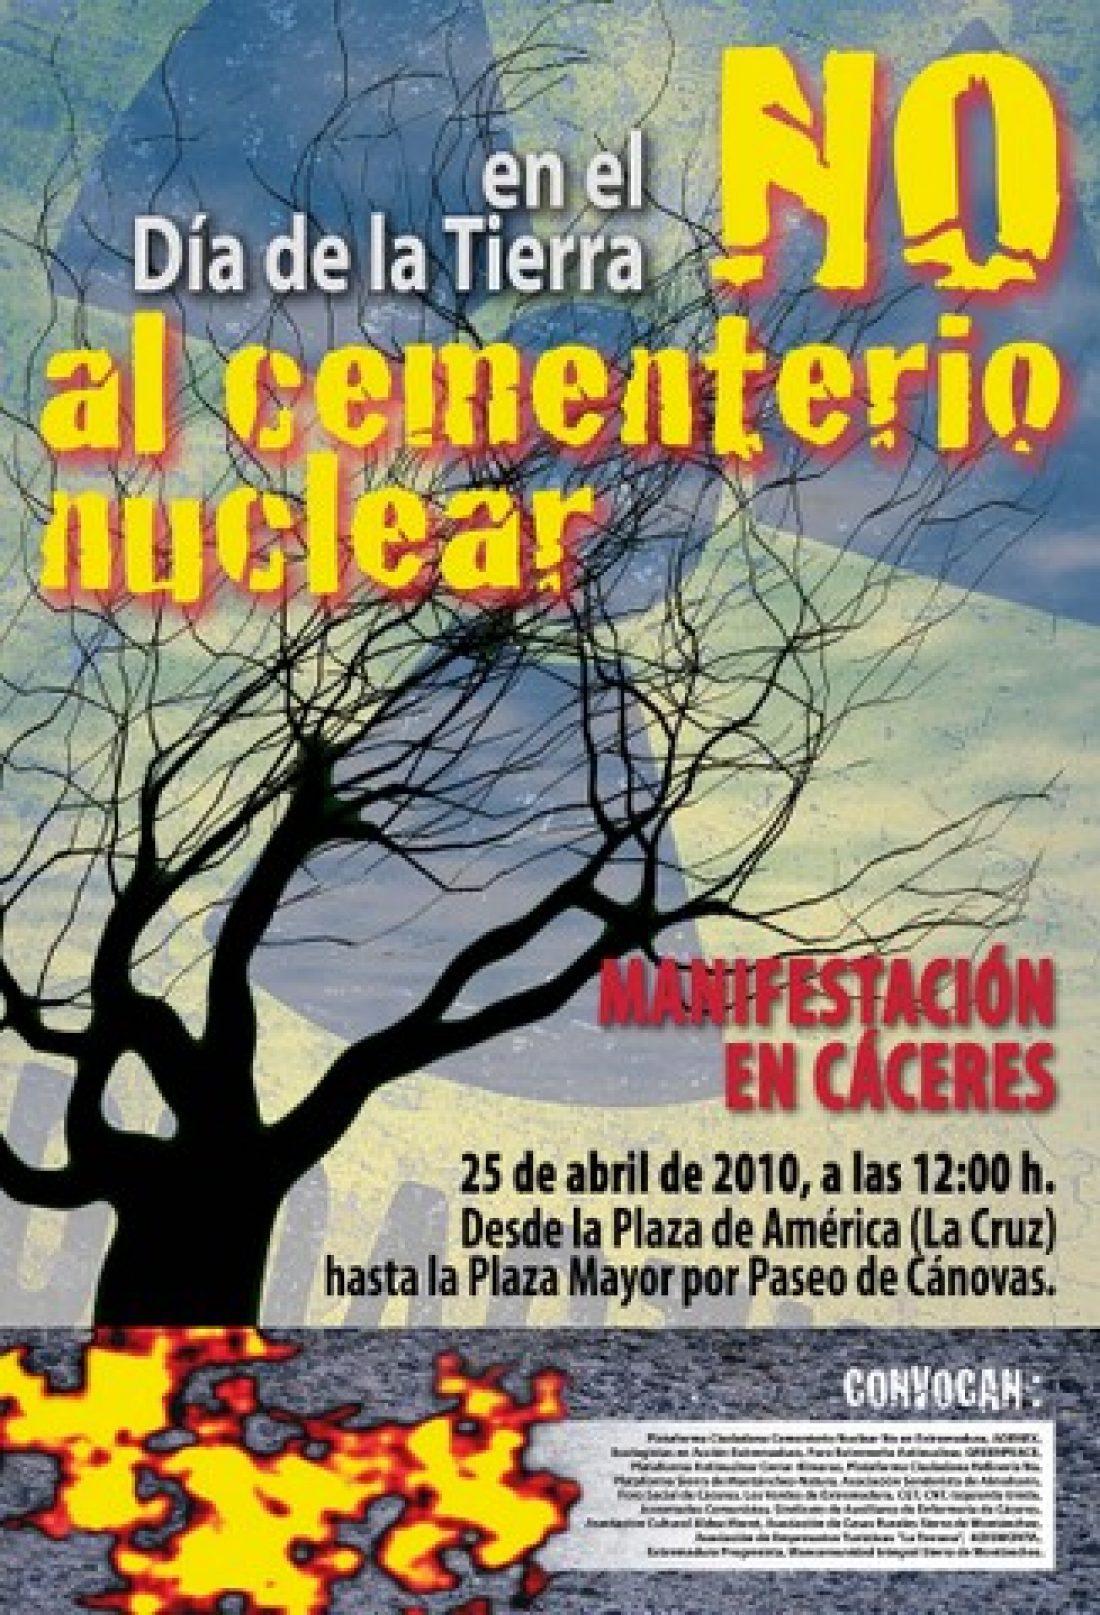 Cáceres, 25 de abril : en el día de la Tierra, manifestación «No al cementerio nuclear»